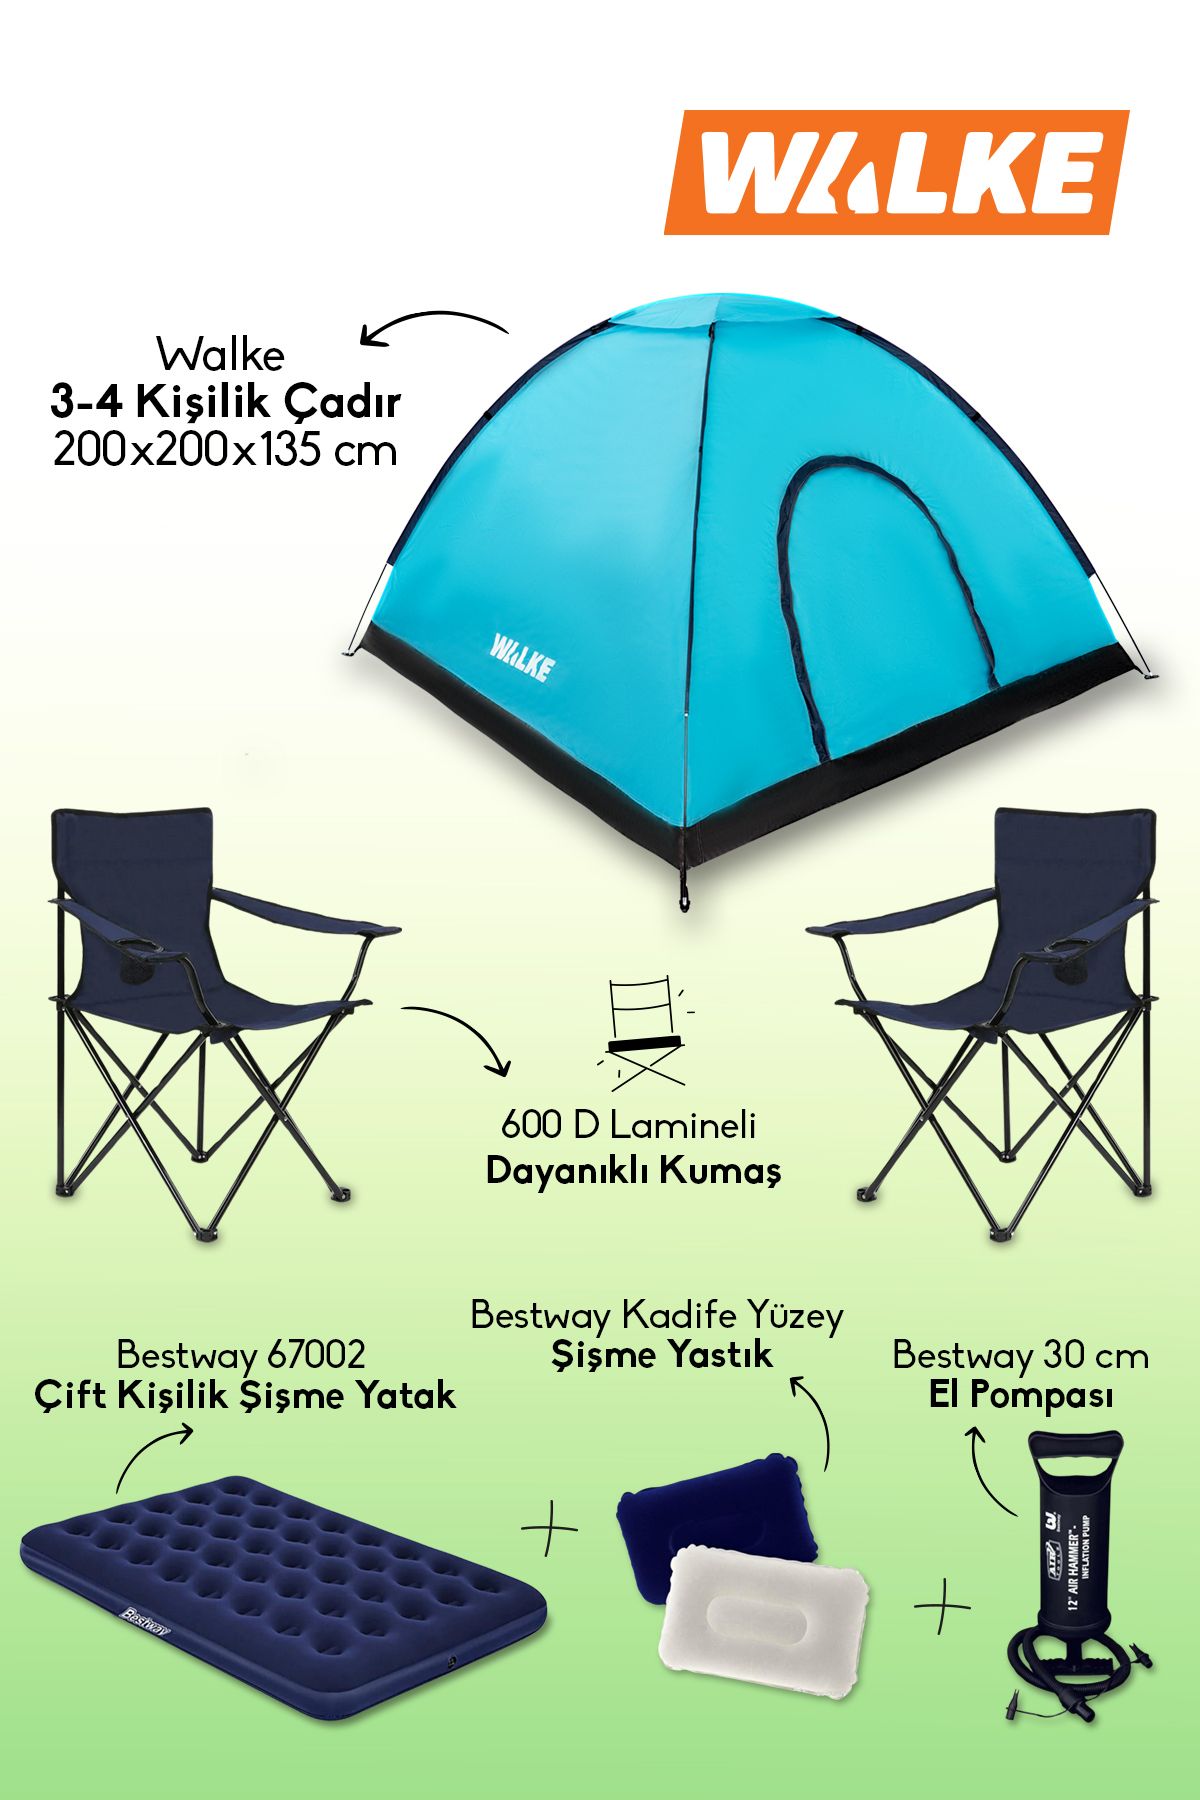 Walke Lüks Kamp Seti 4 Kişilik Çadır Çift Kişilik Yatak 2 Adet Lacivert Sandalye 2 Yastık Pompa